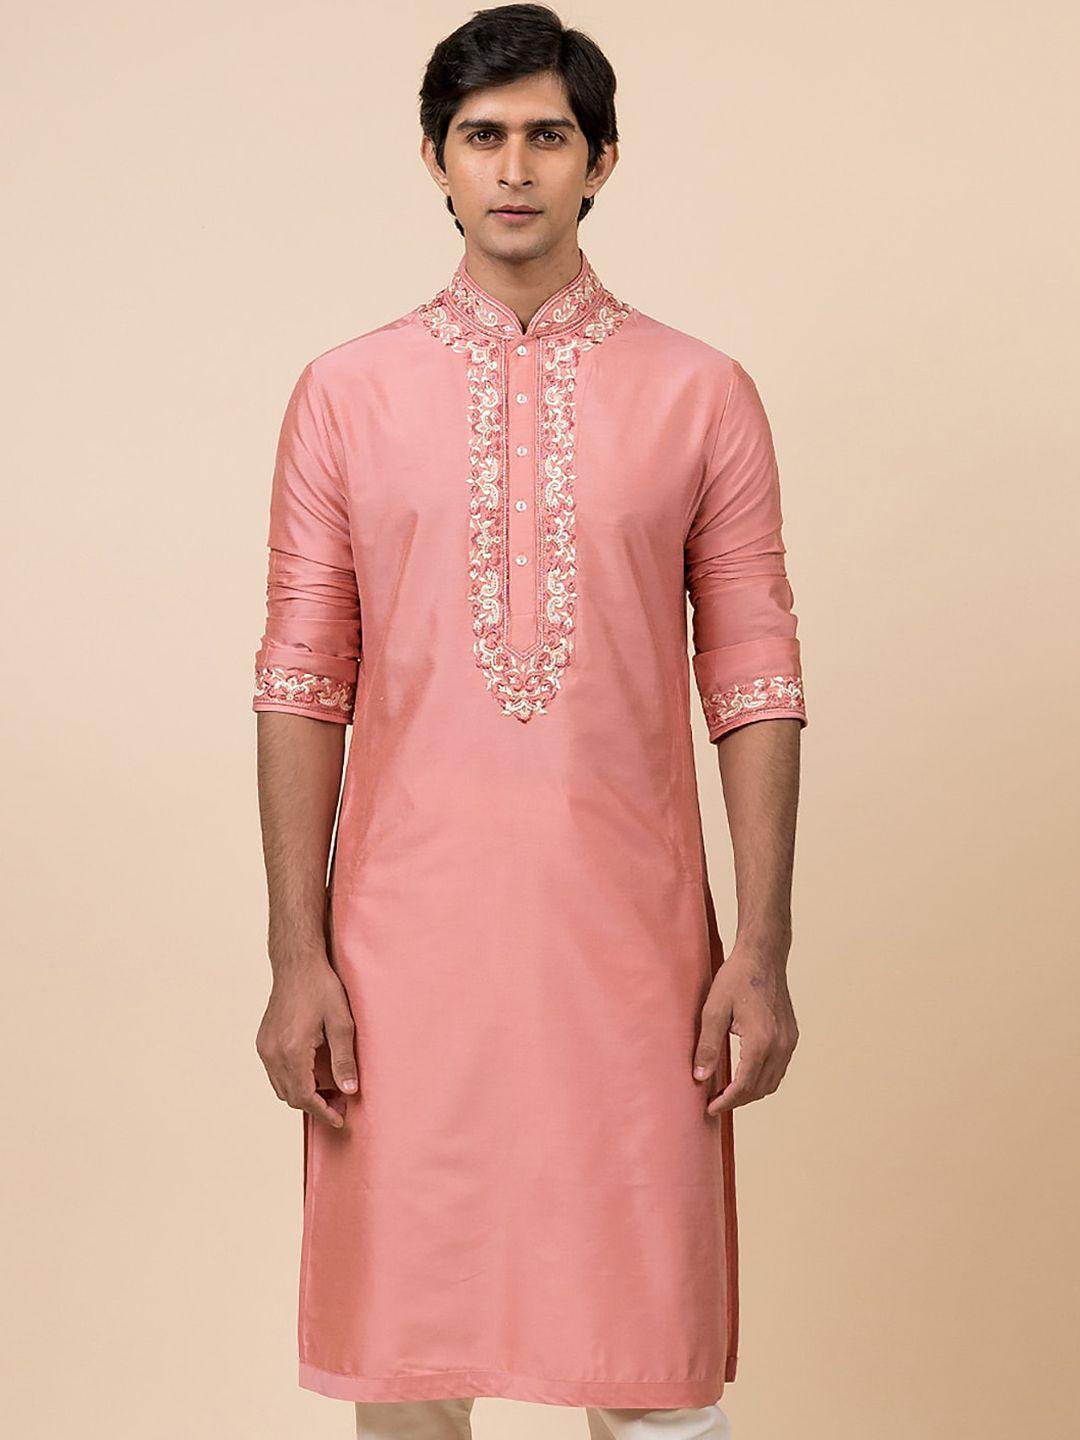 tasva men pink ethnic motifs embroidered thread work kurta with churidar